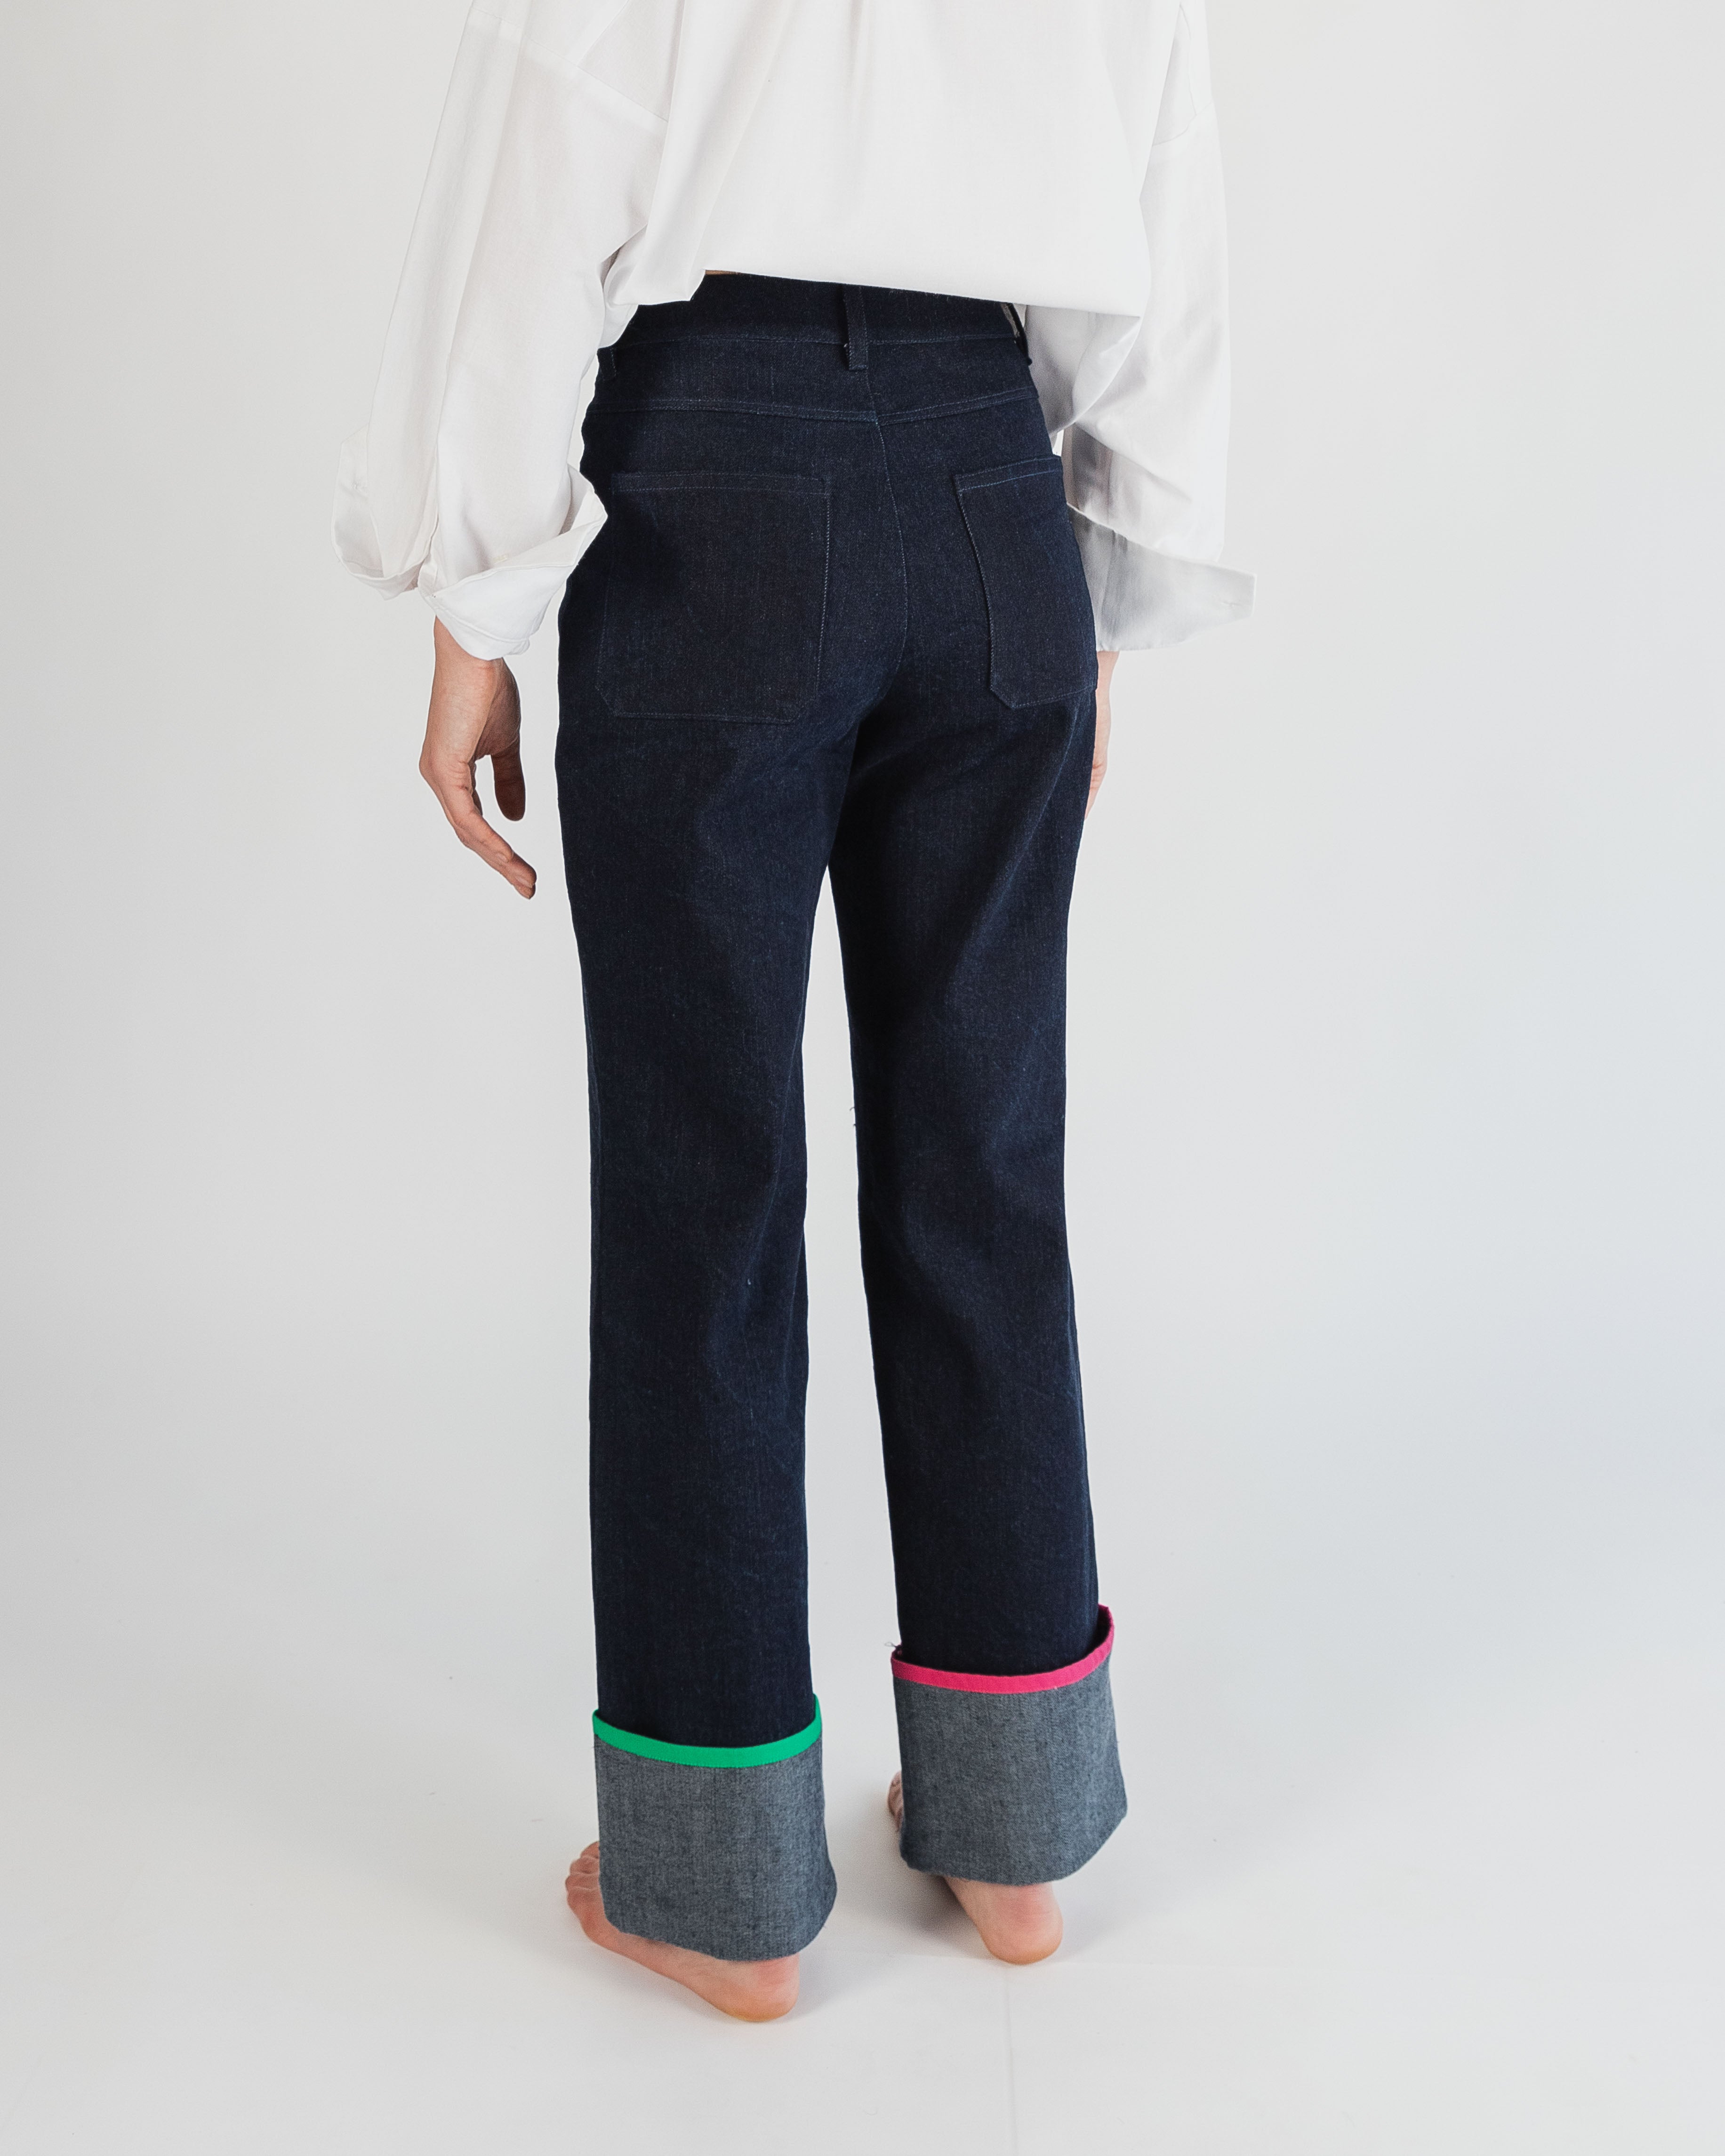 Jeans para mujer a la cintura, con un corte recto, con valenciana ancha y ribete de colores. moda sustentable Hecho en méxico 